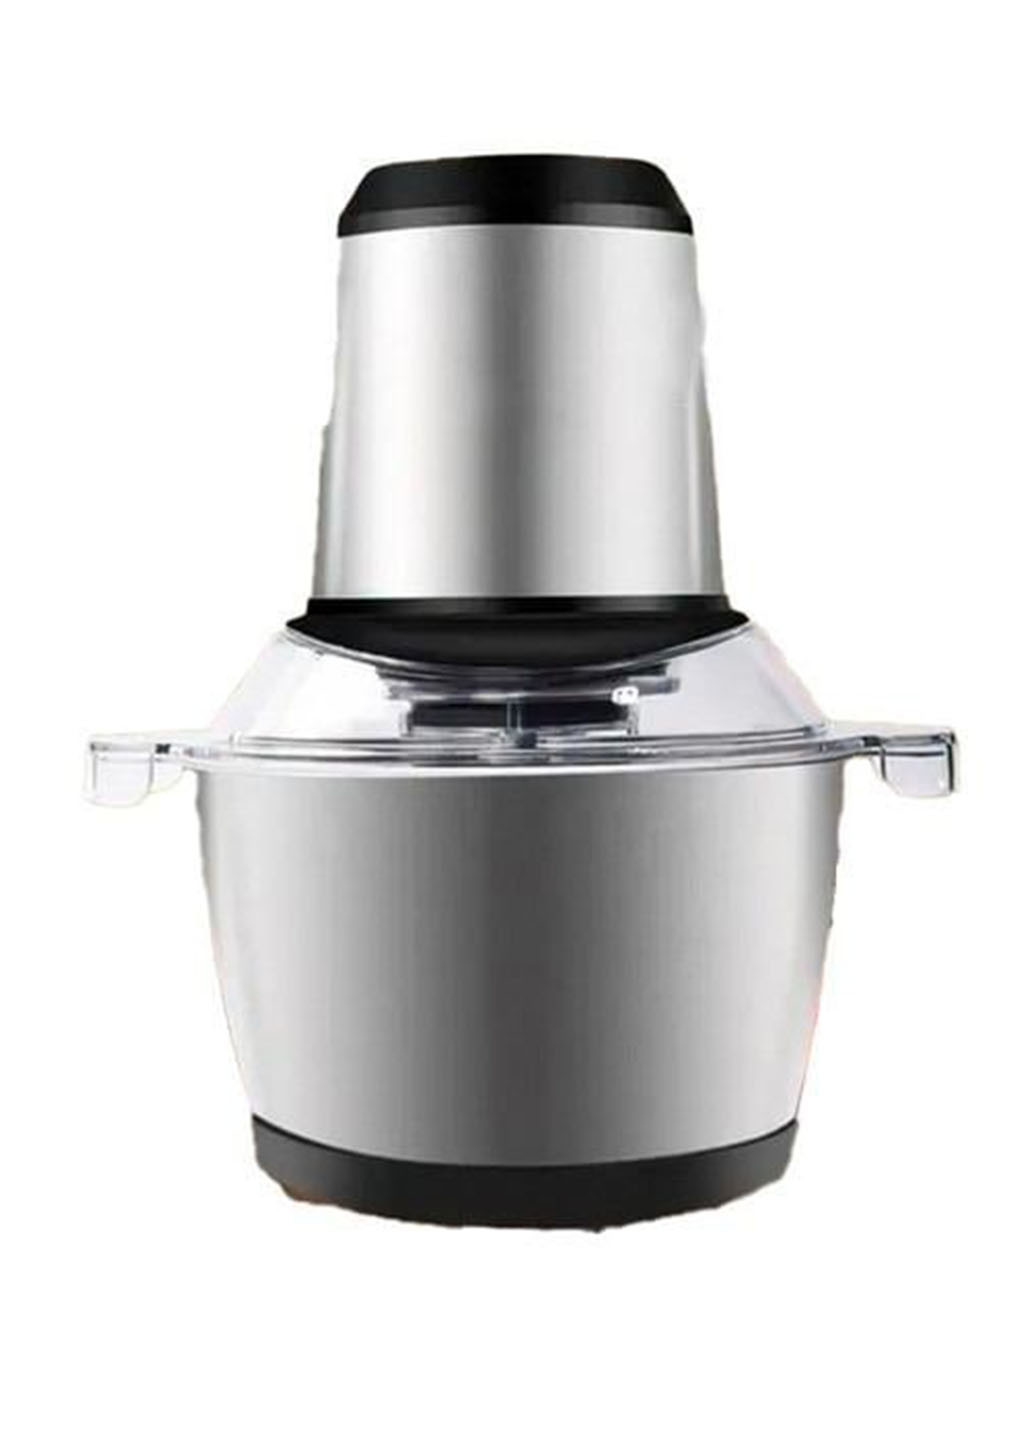 Блендер электрический 7801 измельчитель кухонный с двухъярусным лезвием 1,8 л 300 Вт Unique (271679543)